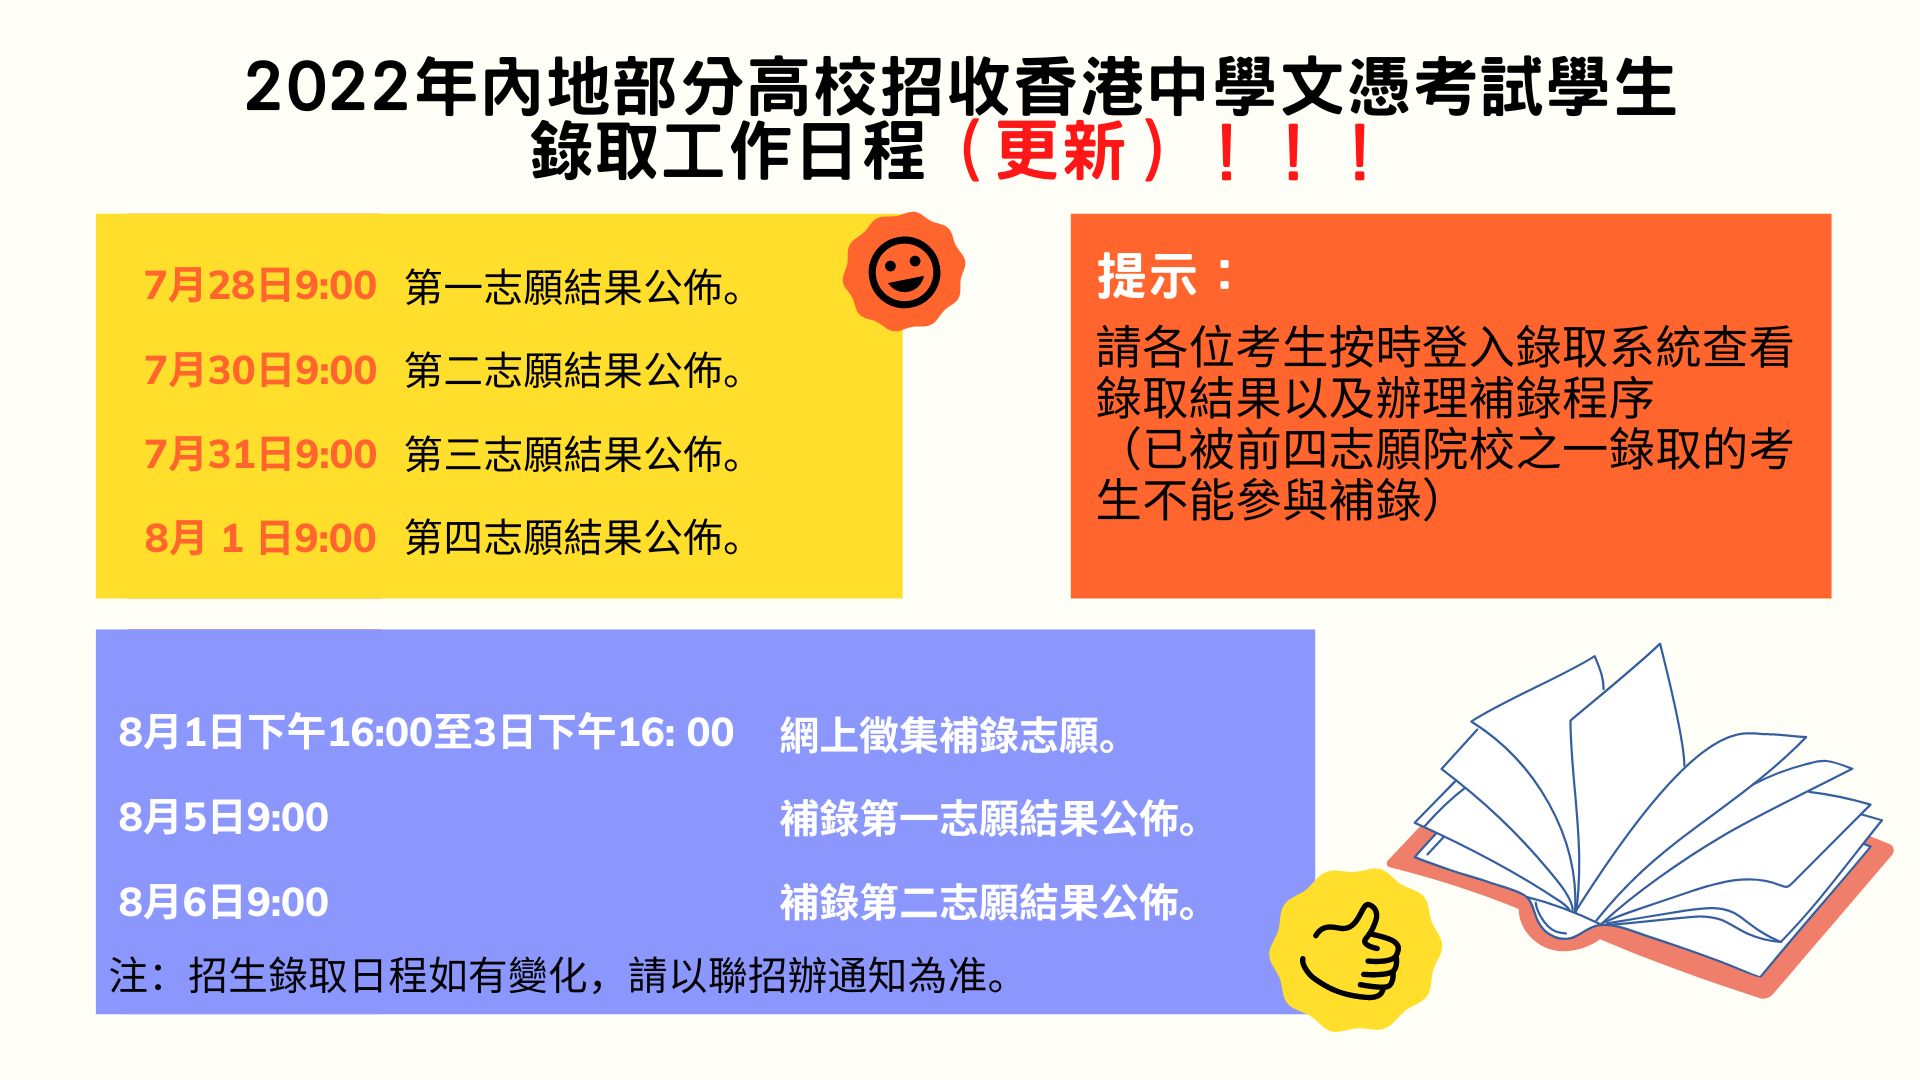 2022/23學年內地高校招收香港中學文憑考試學生計劃的錄取安排通告 （更新）